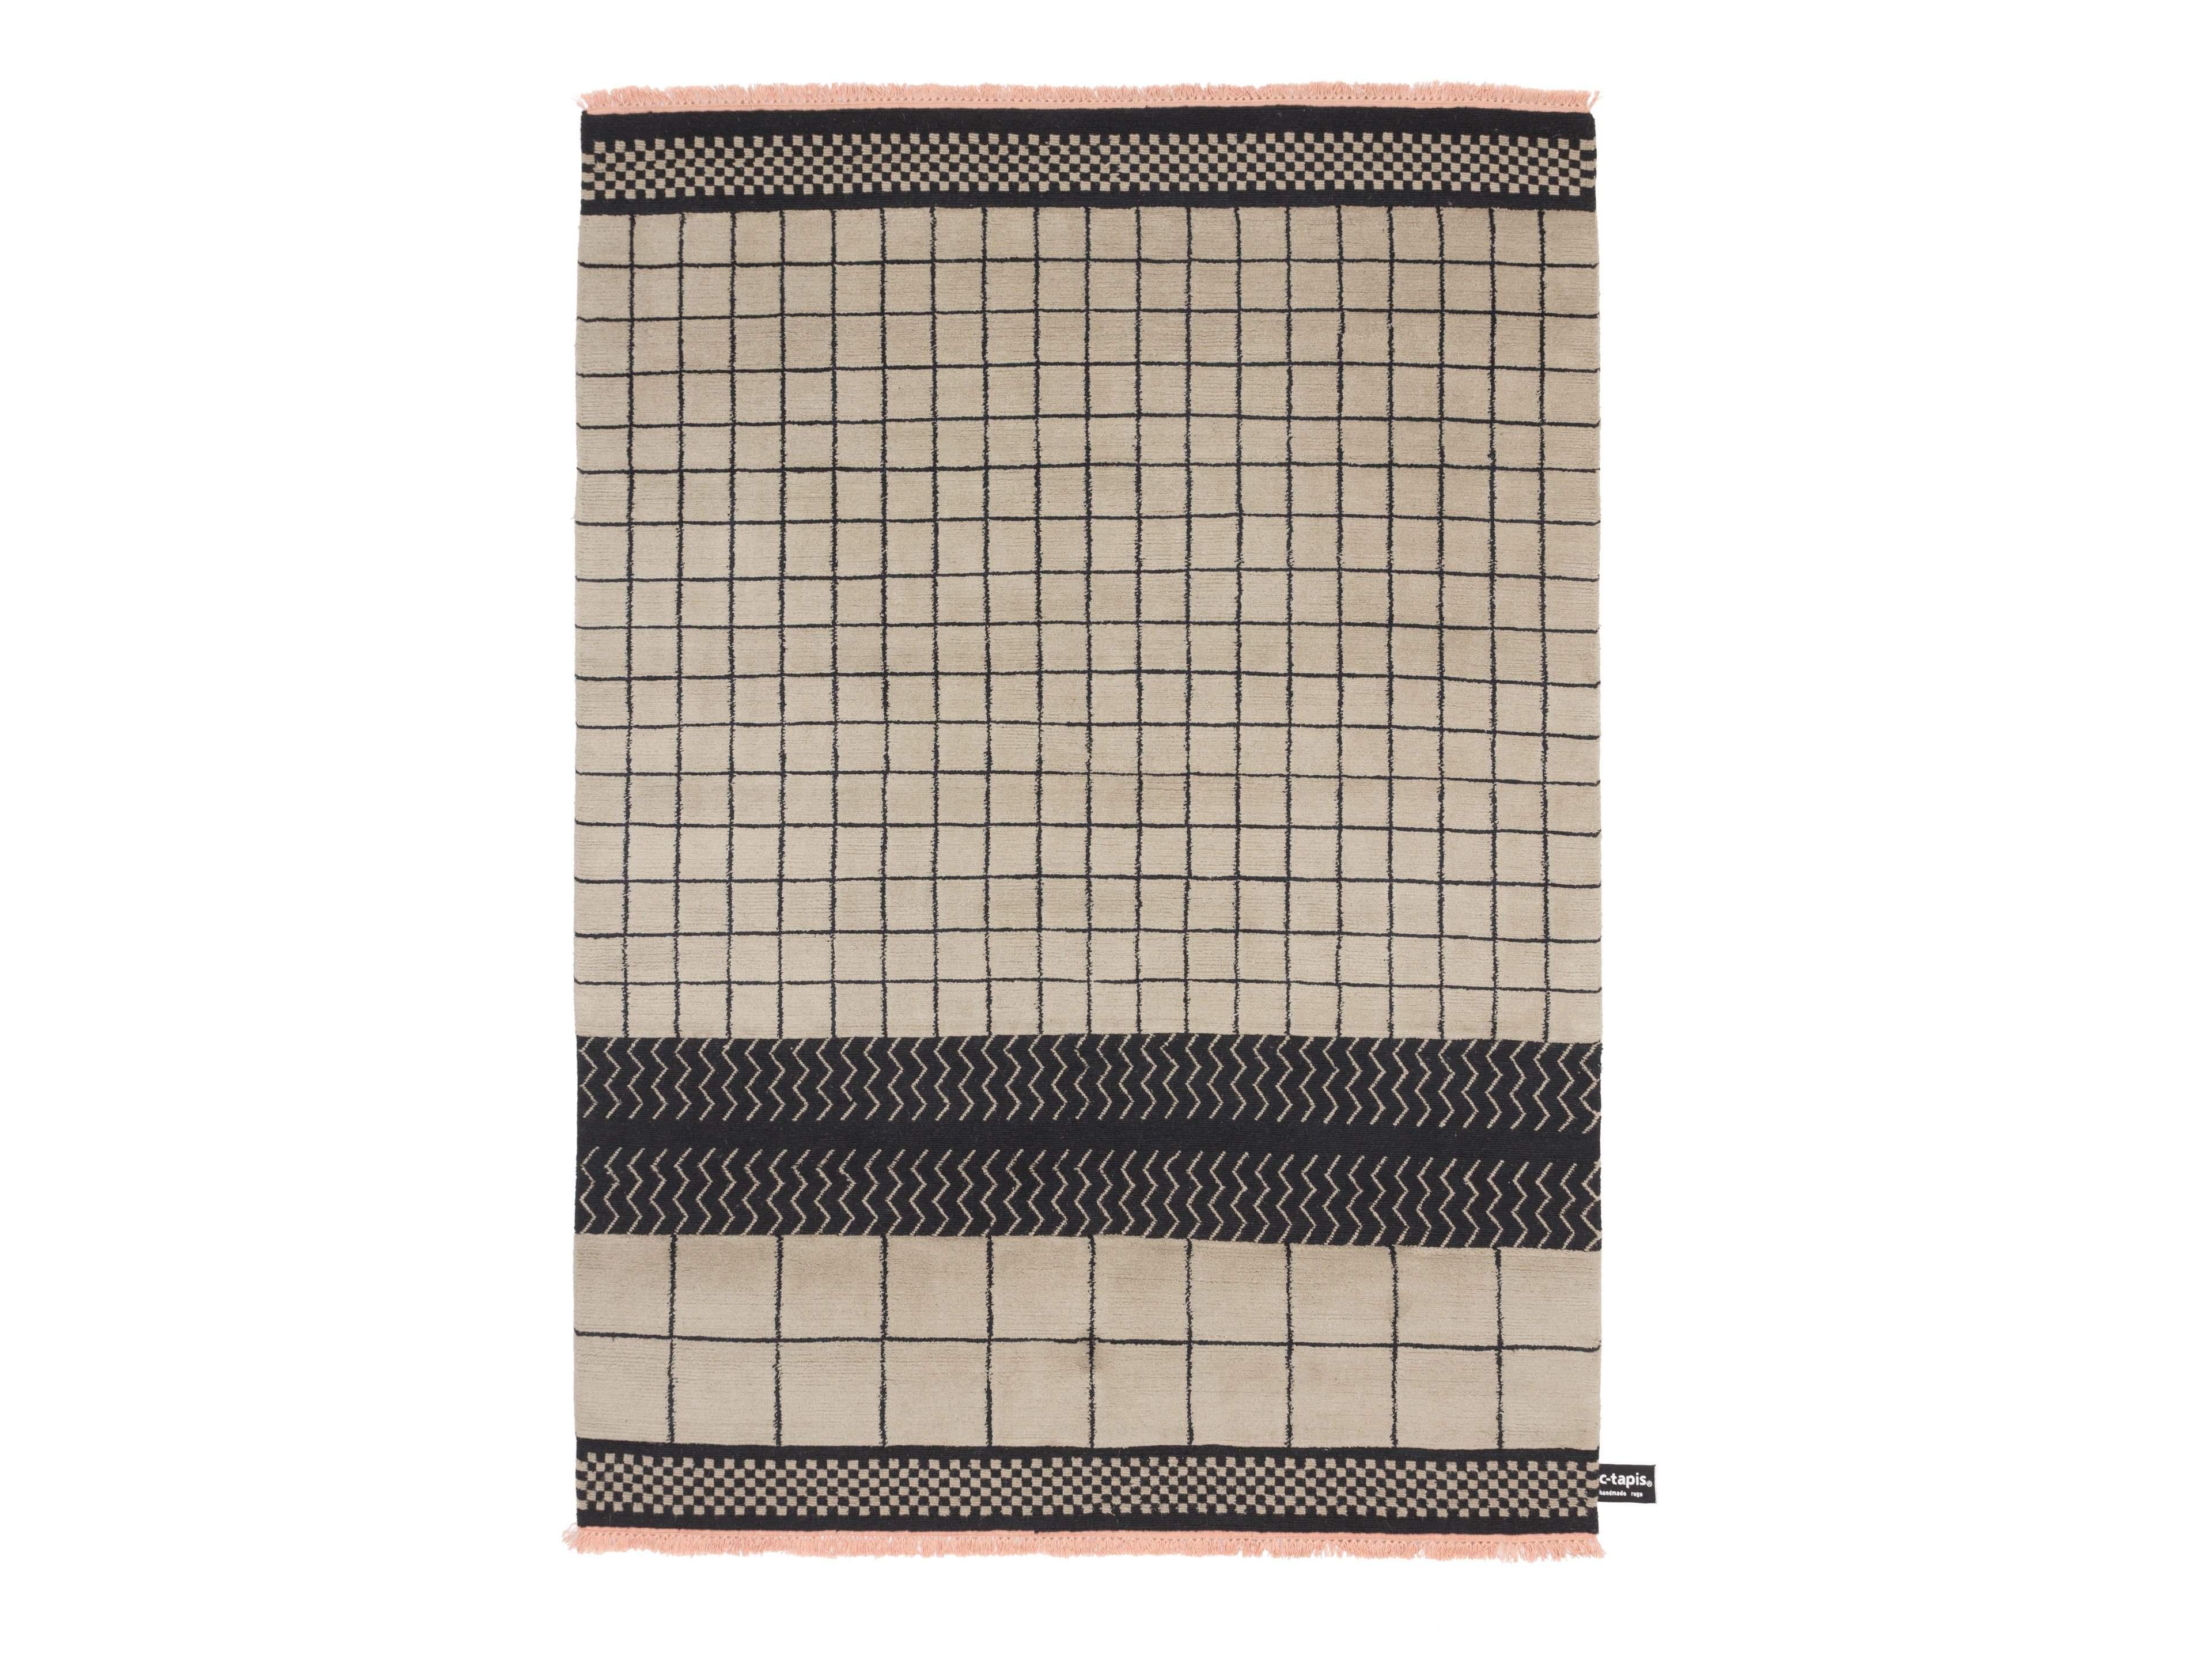 QUADRO CELESTE #31 by cc-tapis - Tappeto fatto a mano in lana a motivi geometrici